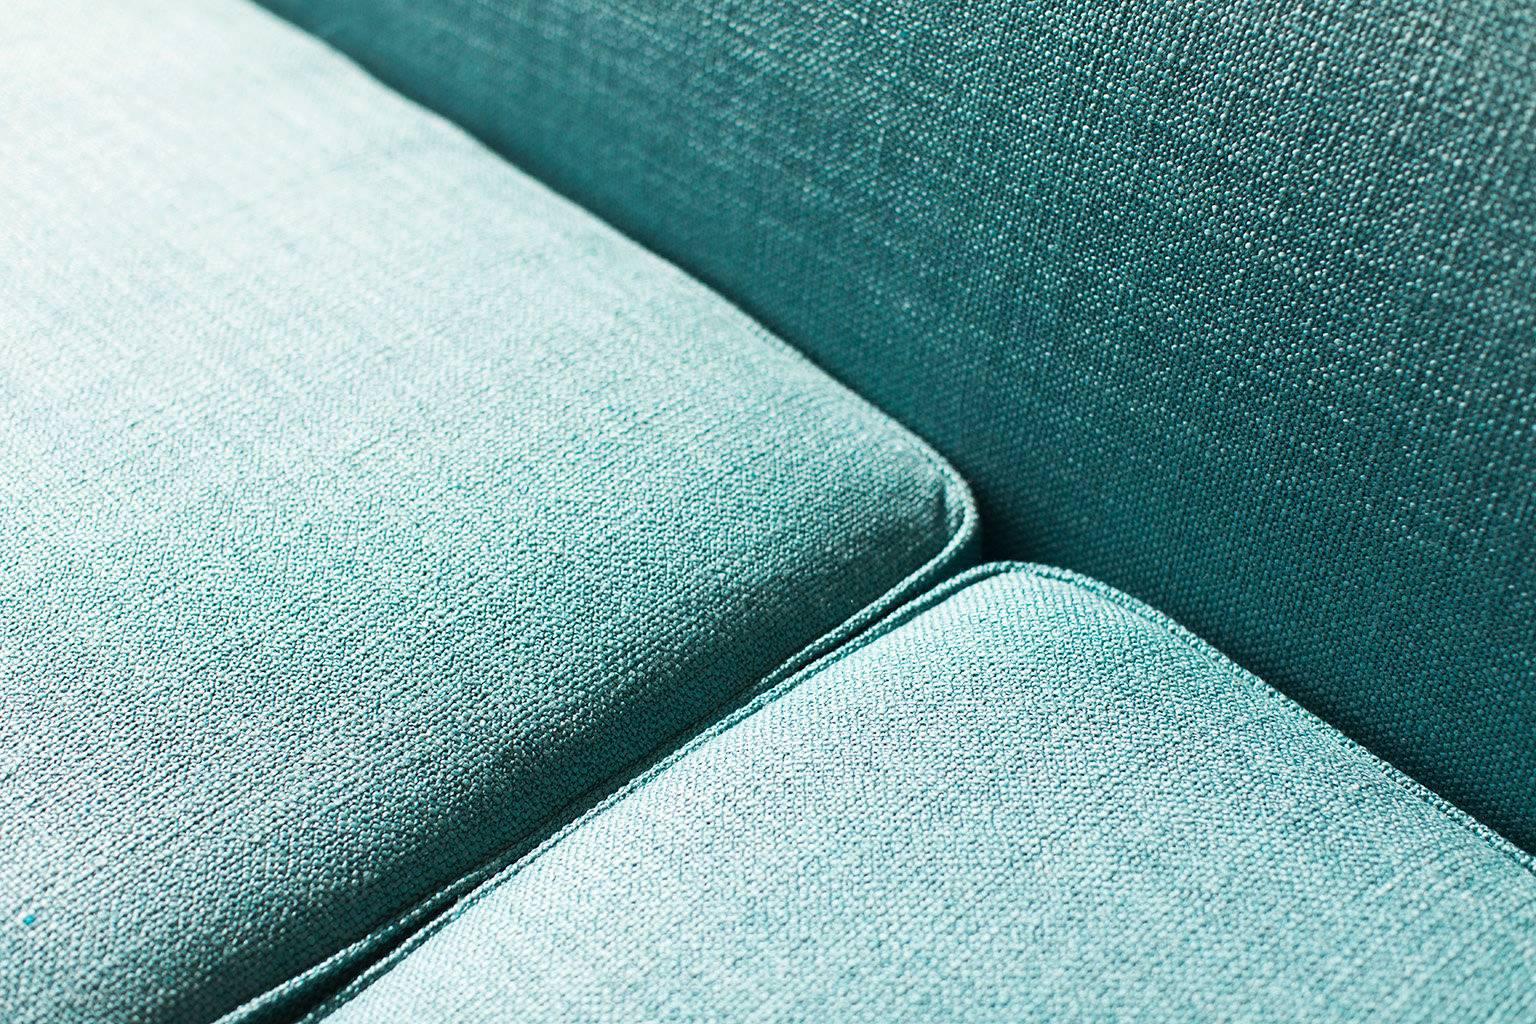 Fabric Selig Sofa Designer Attributed to William Hinn